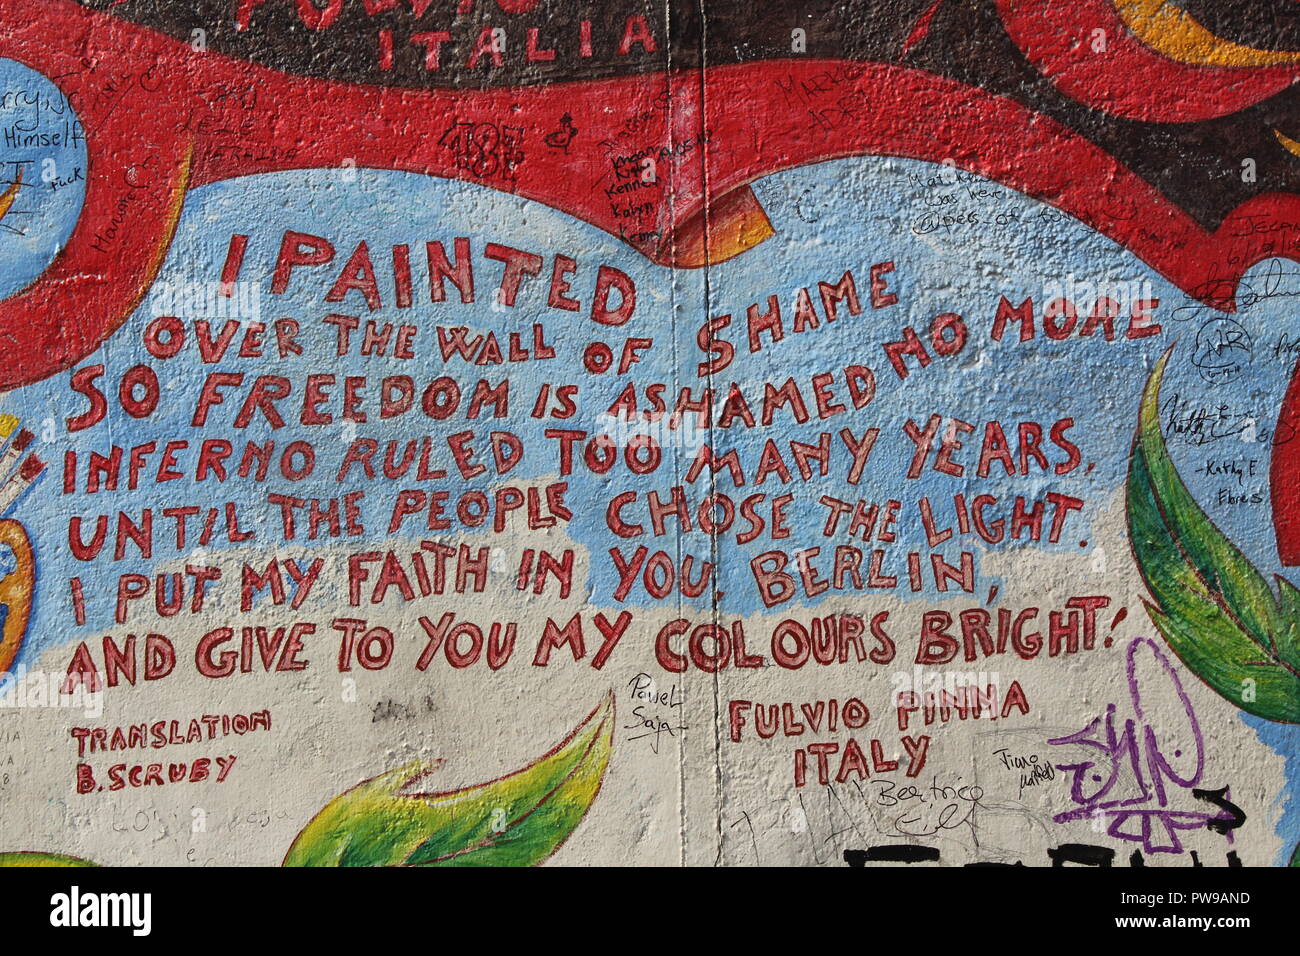 Close up of 'je peint sur ce mur de la honte" la liberté poème d'hymne de joie peinture murale par Fulvio Pinna - East Side Gallery - Mur de Berlin, Allemagne Banque D'Images